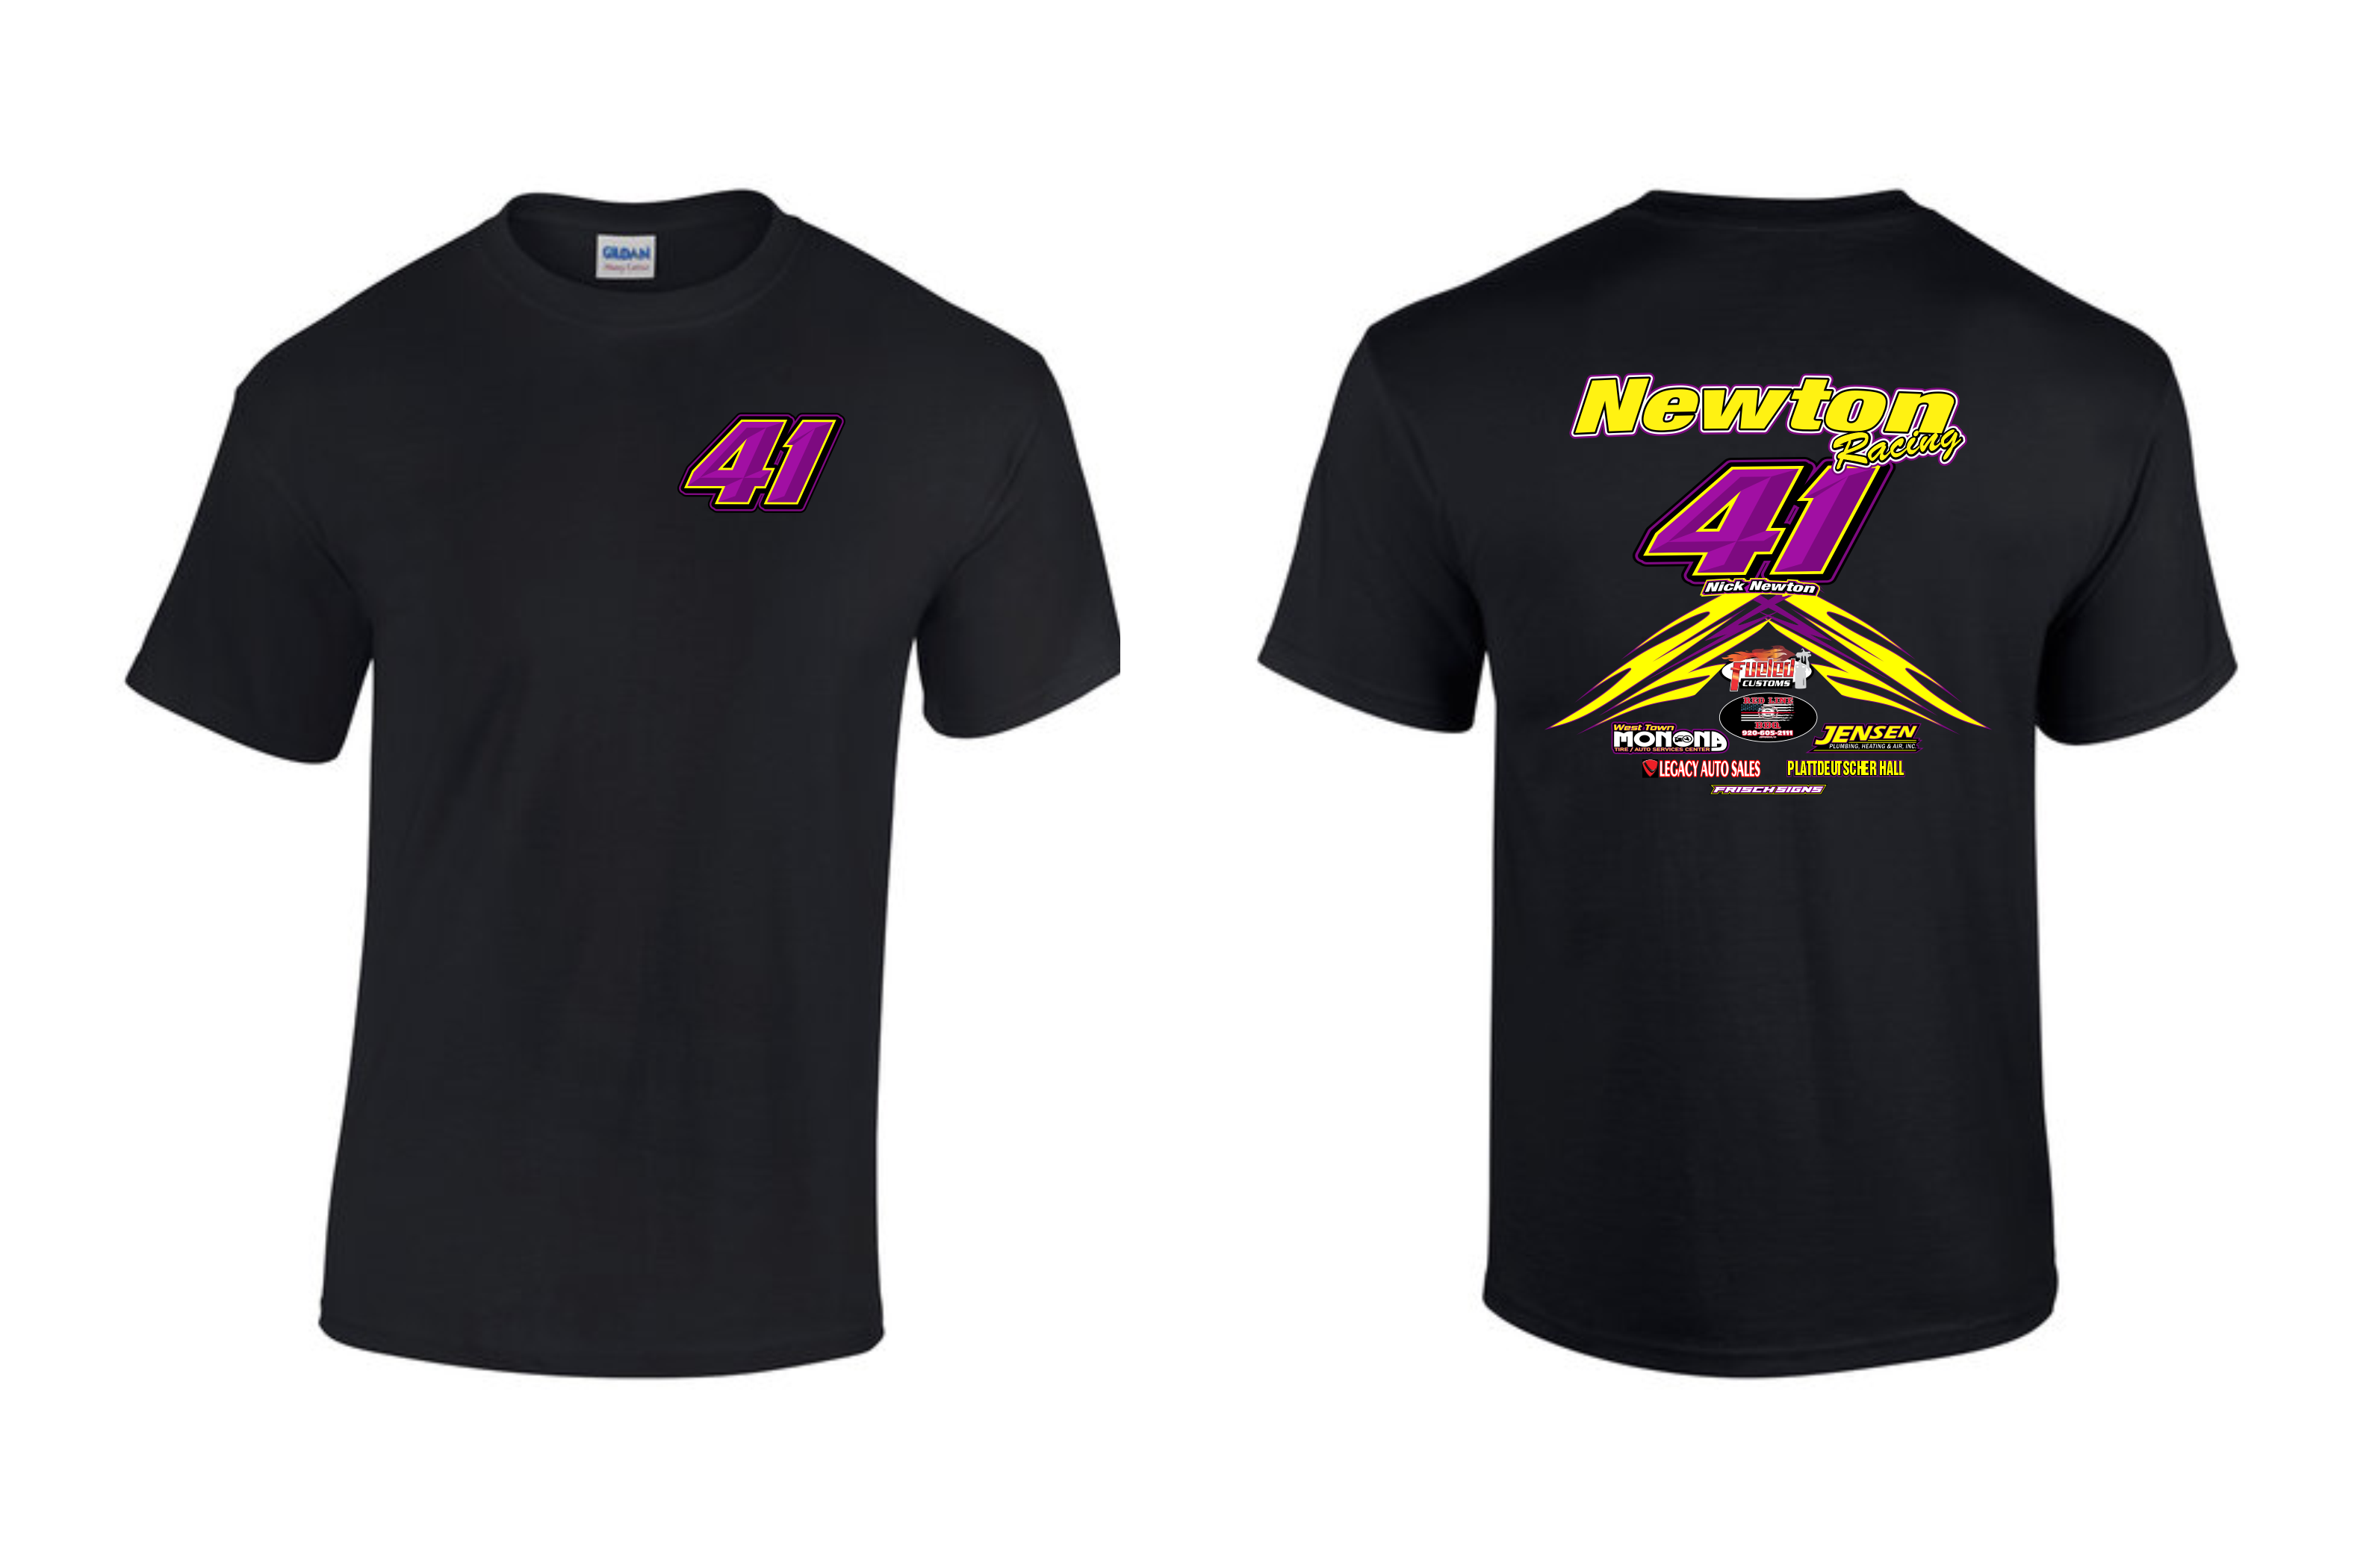 Nick Newton T-Shirts